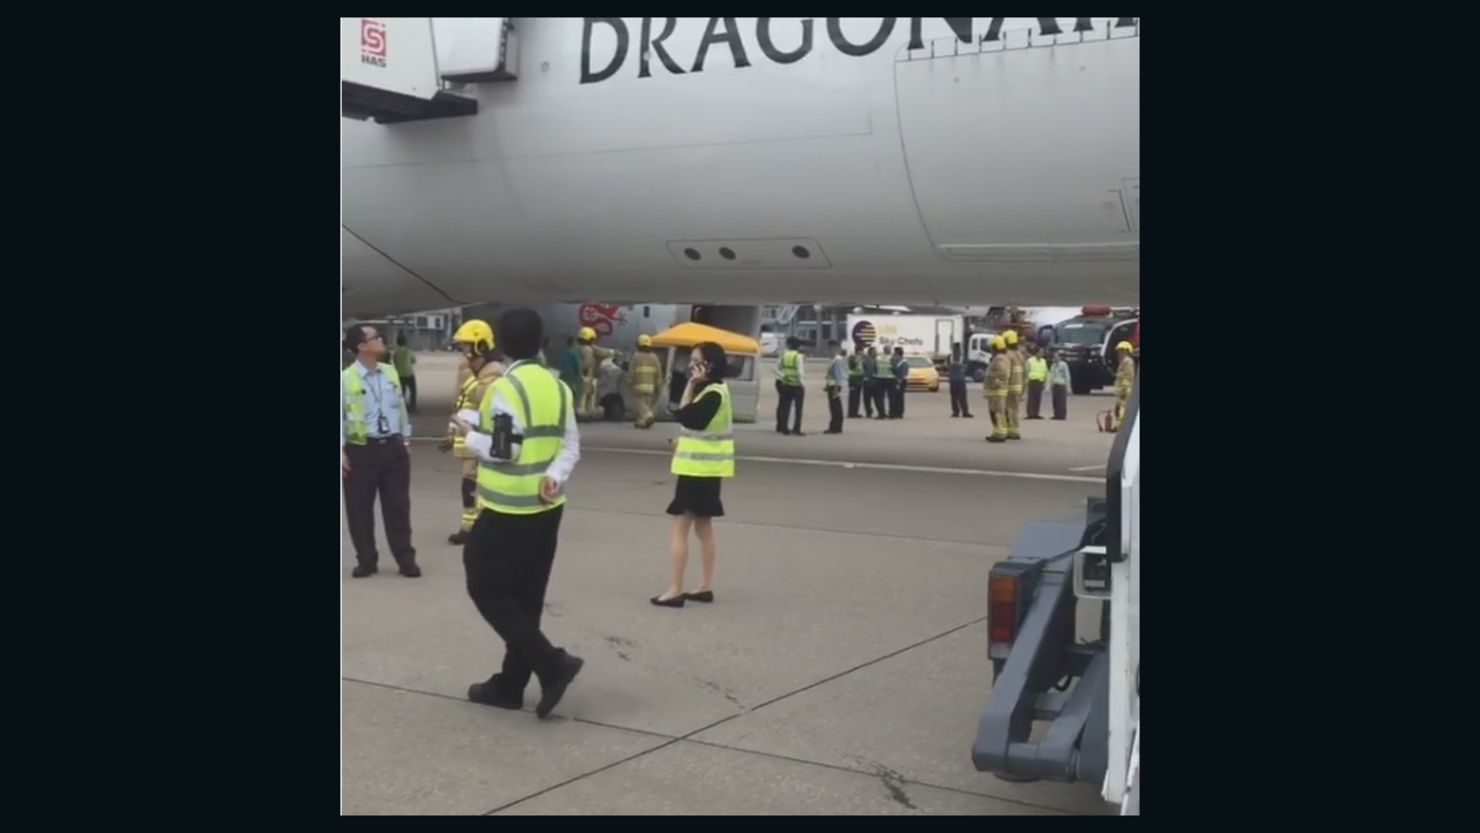 A Dragonair plane crashed into a van at Hong Kong International Airport on Thursday.